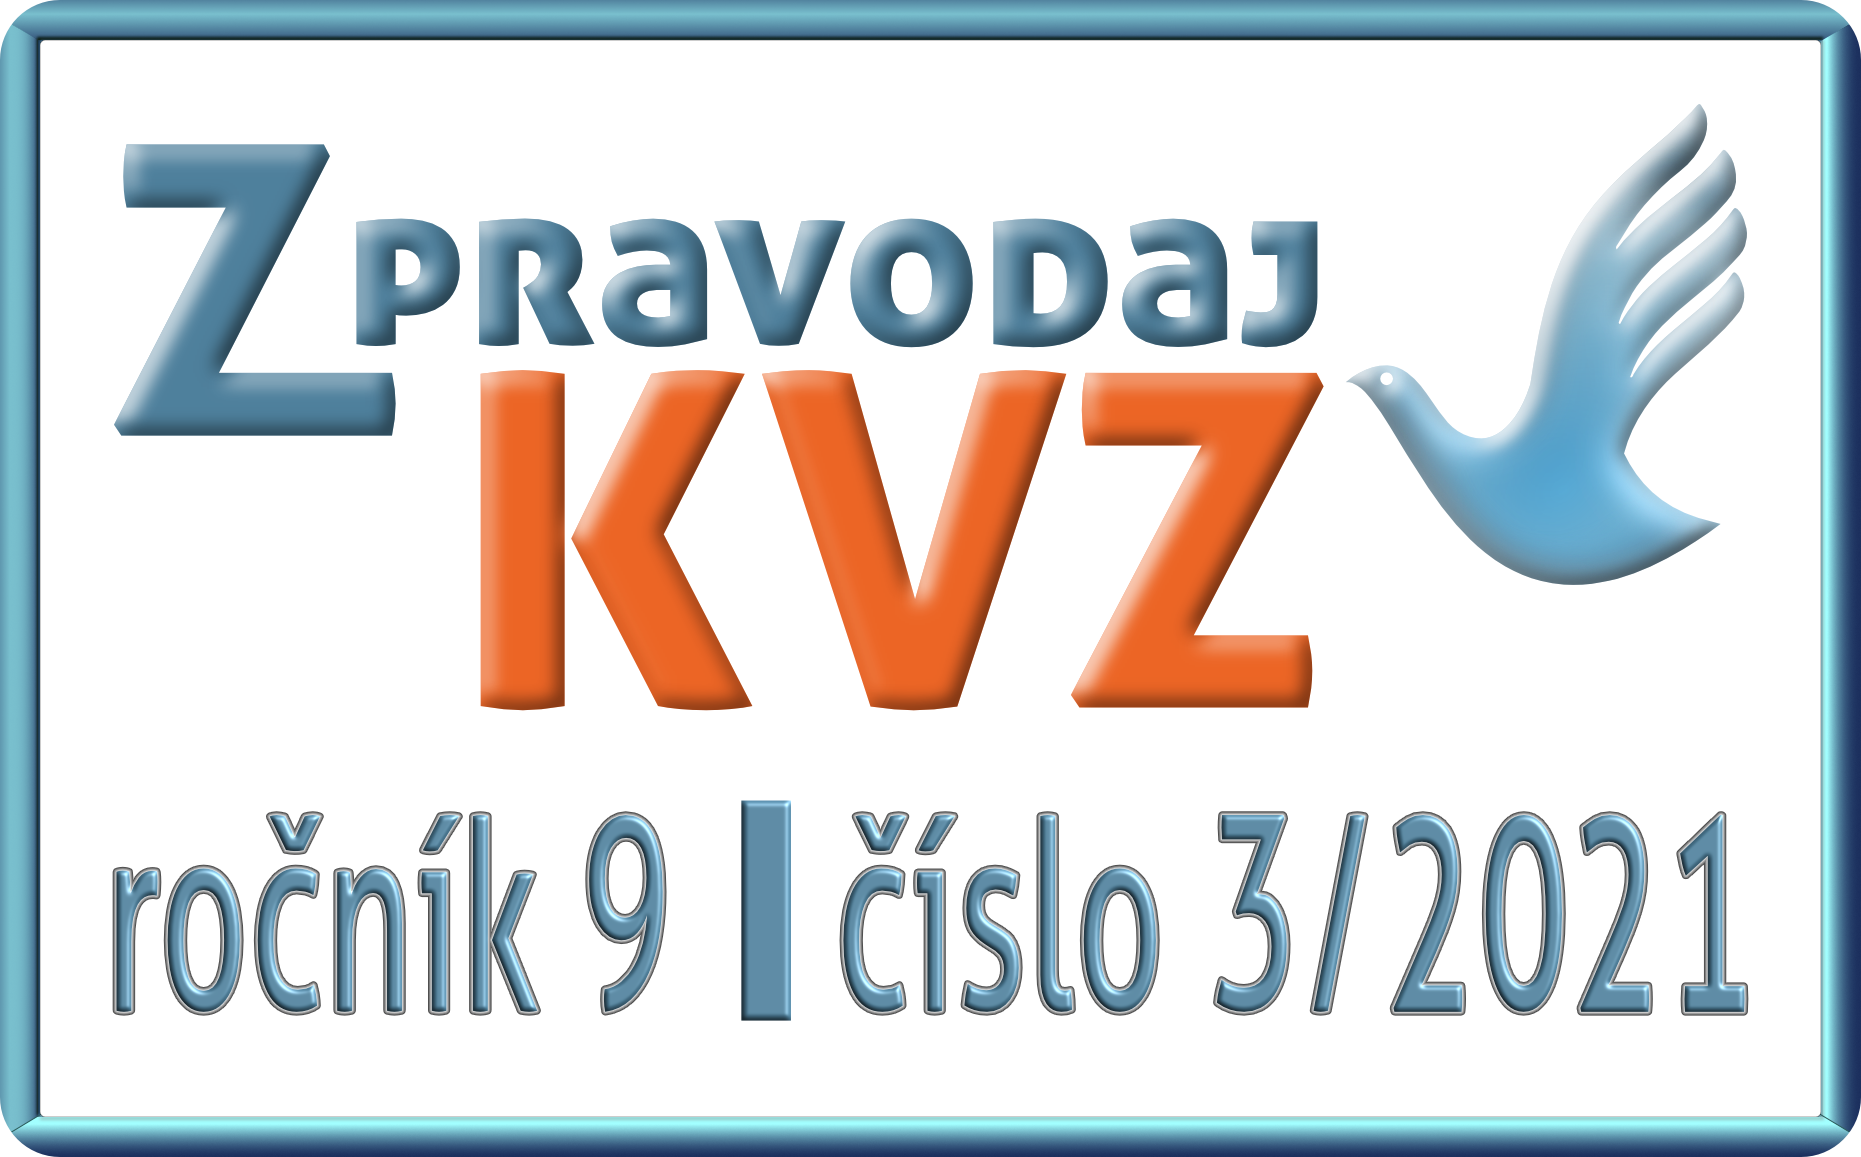 Zpravodaj_KVZ_03_2021